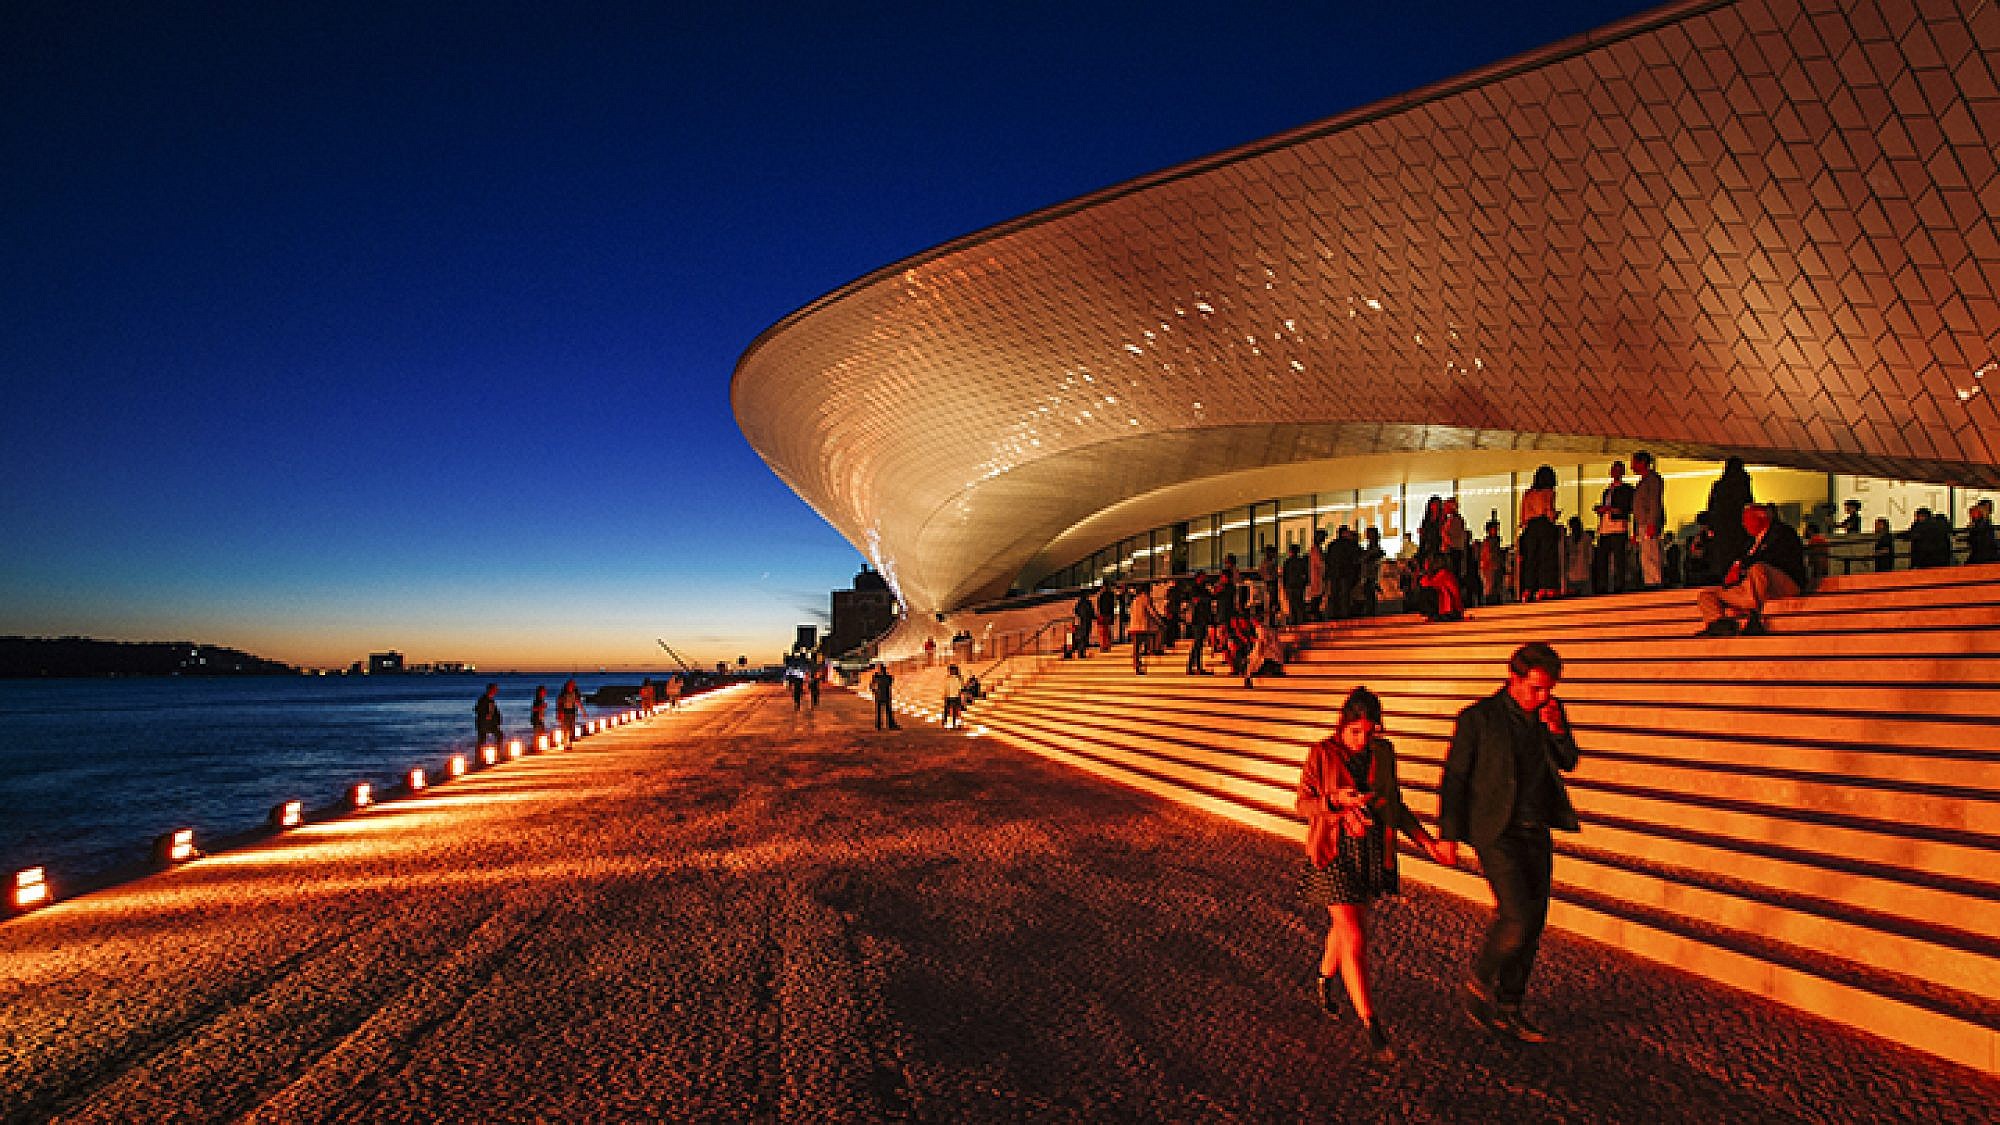 MAAT: המוזיאון לתרבות, אדריכלות וטכנולוגיה בליסבון | צילום: Francisco Nogueira